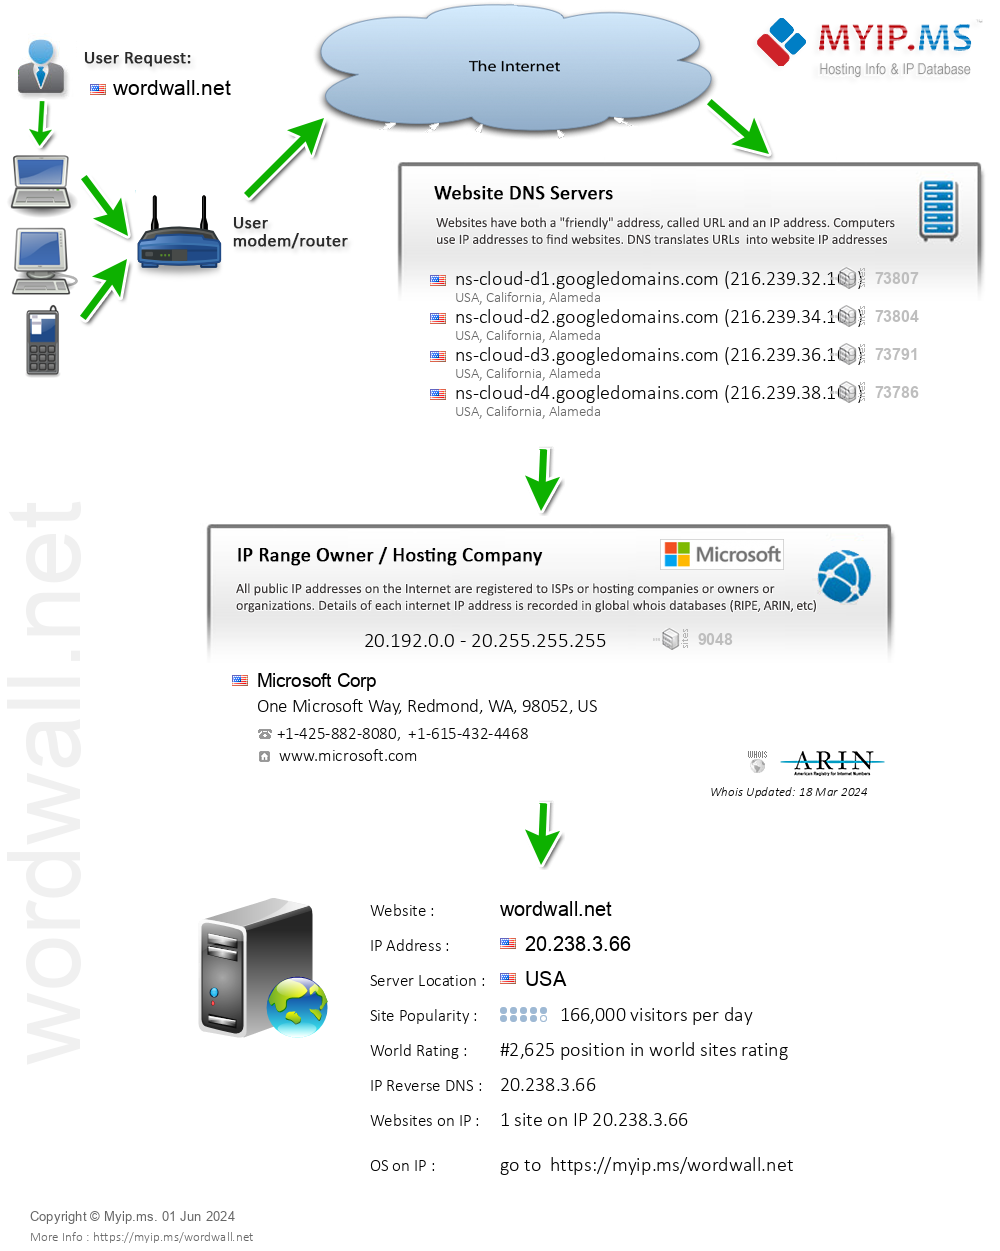 Wordwall.net - Website Hosting Visual IP Diagram